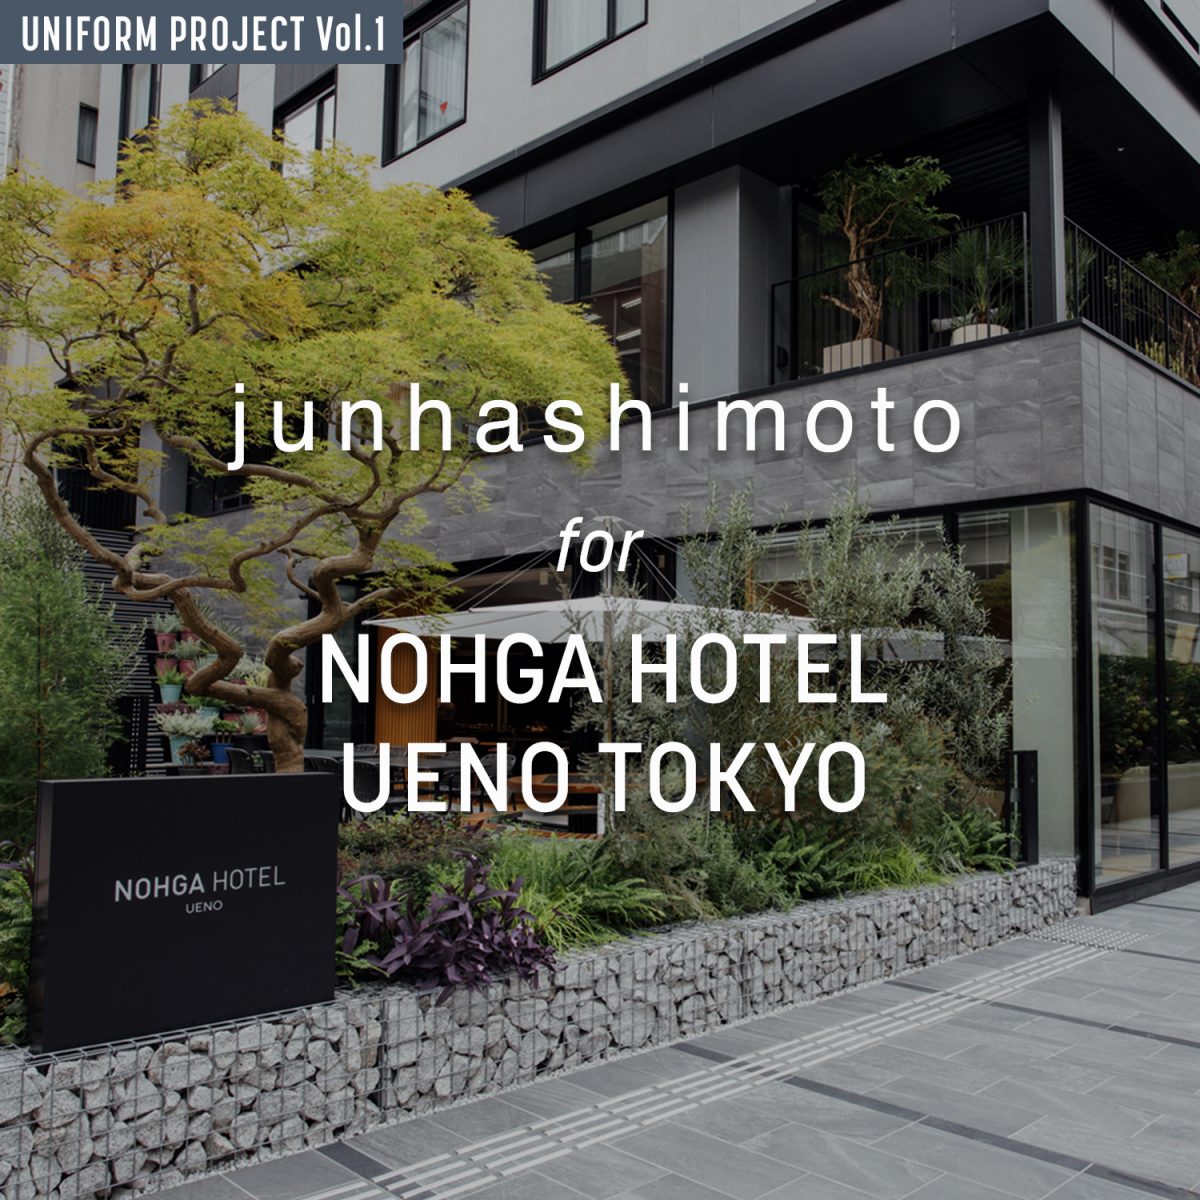 junhashimoto for NOHGA HOTEL UENO TOKYO